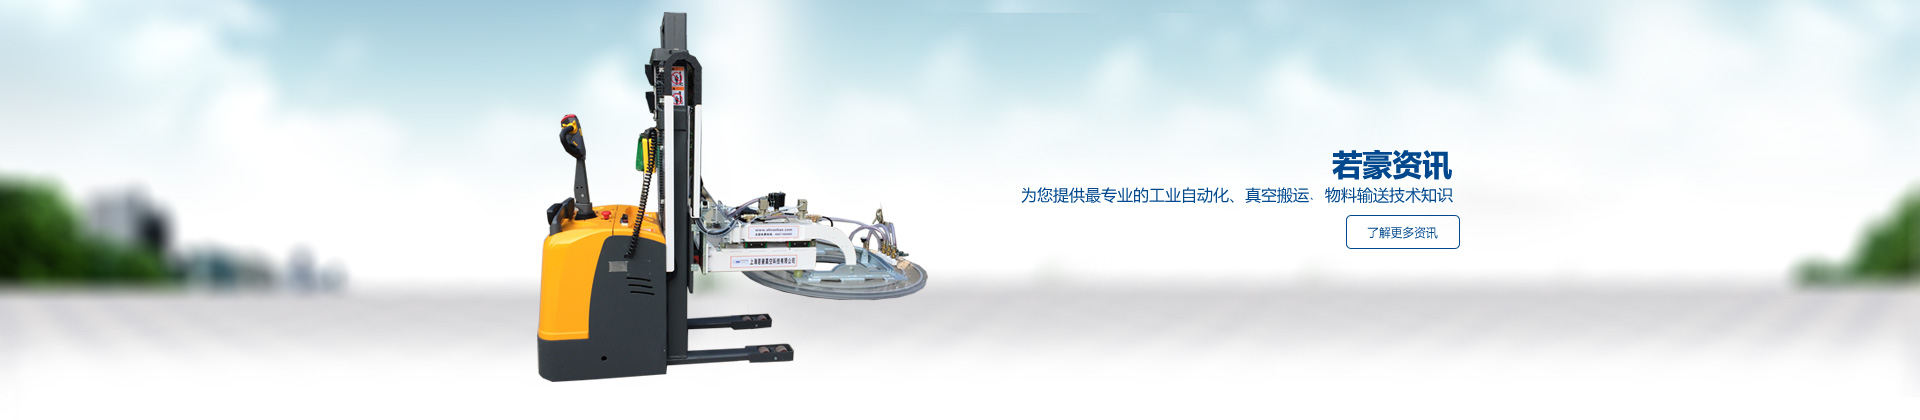 玻璃電動吸盤,真空氣管吸吊機,真空吸盤吊具,真空吸盤,電動吸盤,玻璃吸盤,吸盤
選擇上海若豪真空科技